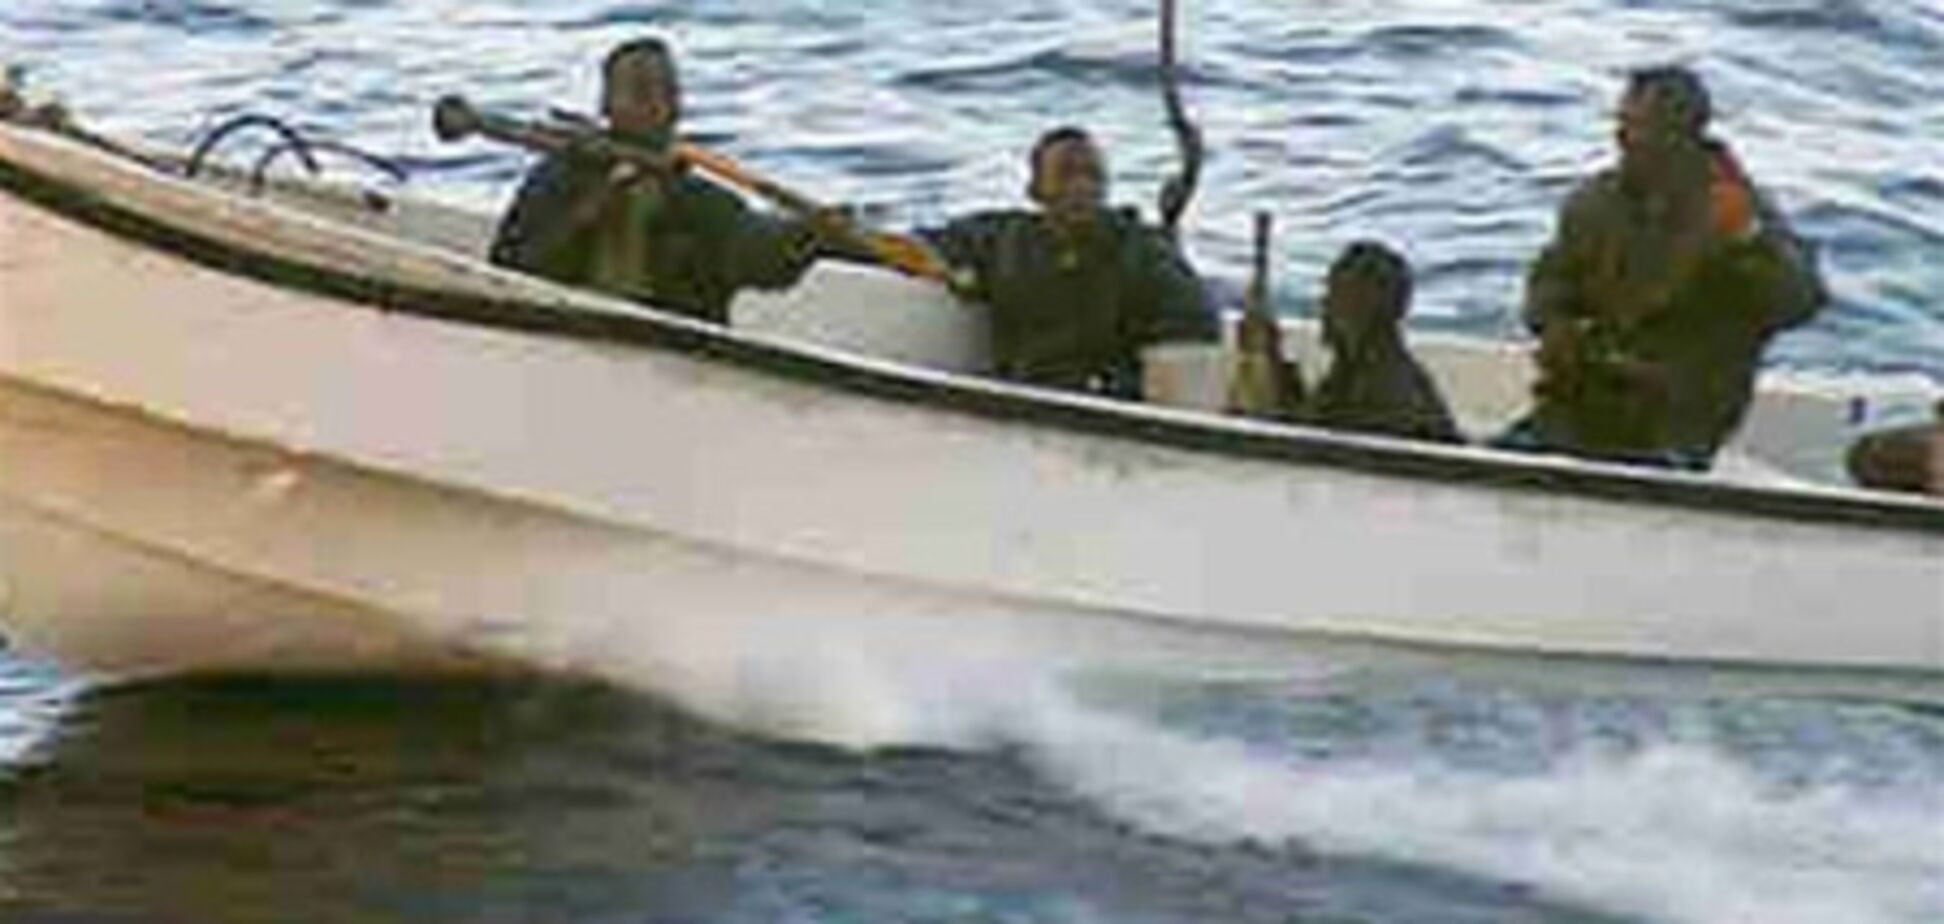 Пираты захватили судно с четырьмя украинцами в составе экипажа